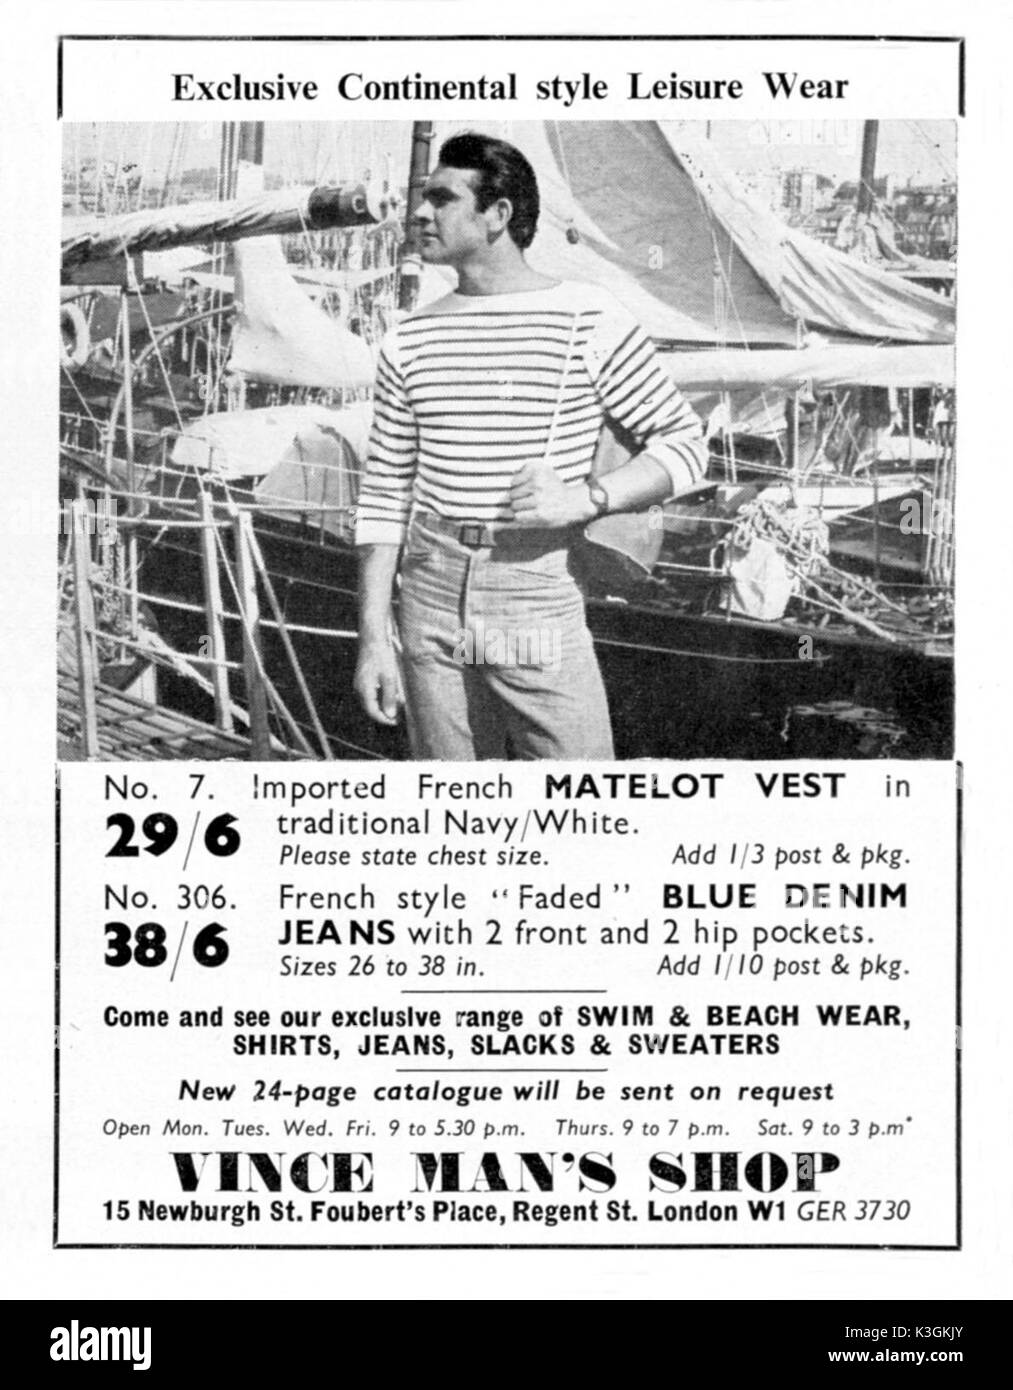 Früh in seiner Karriere Film star SEAN CONNERY modelliert Kleidung im Magazin Anzeigen und Katalogen. Diese Werbung von 1957 Stockfoto